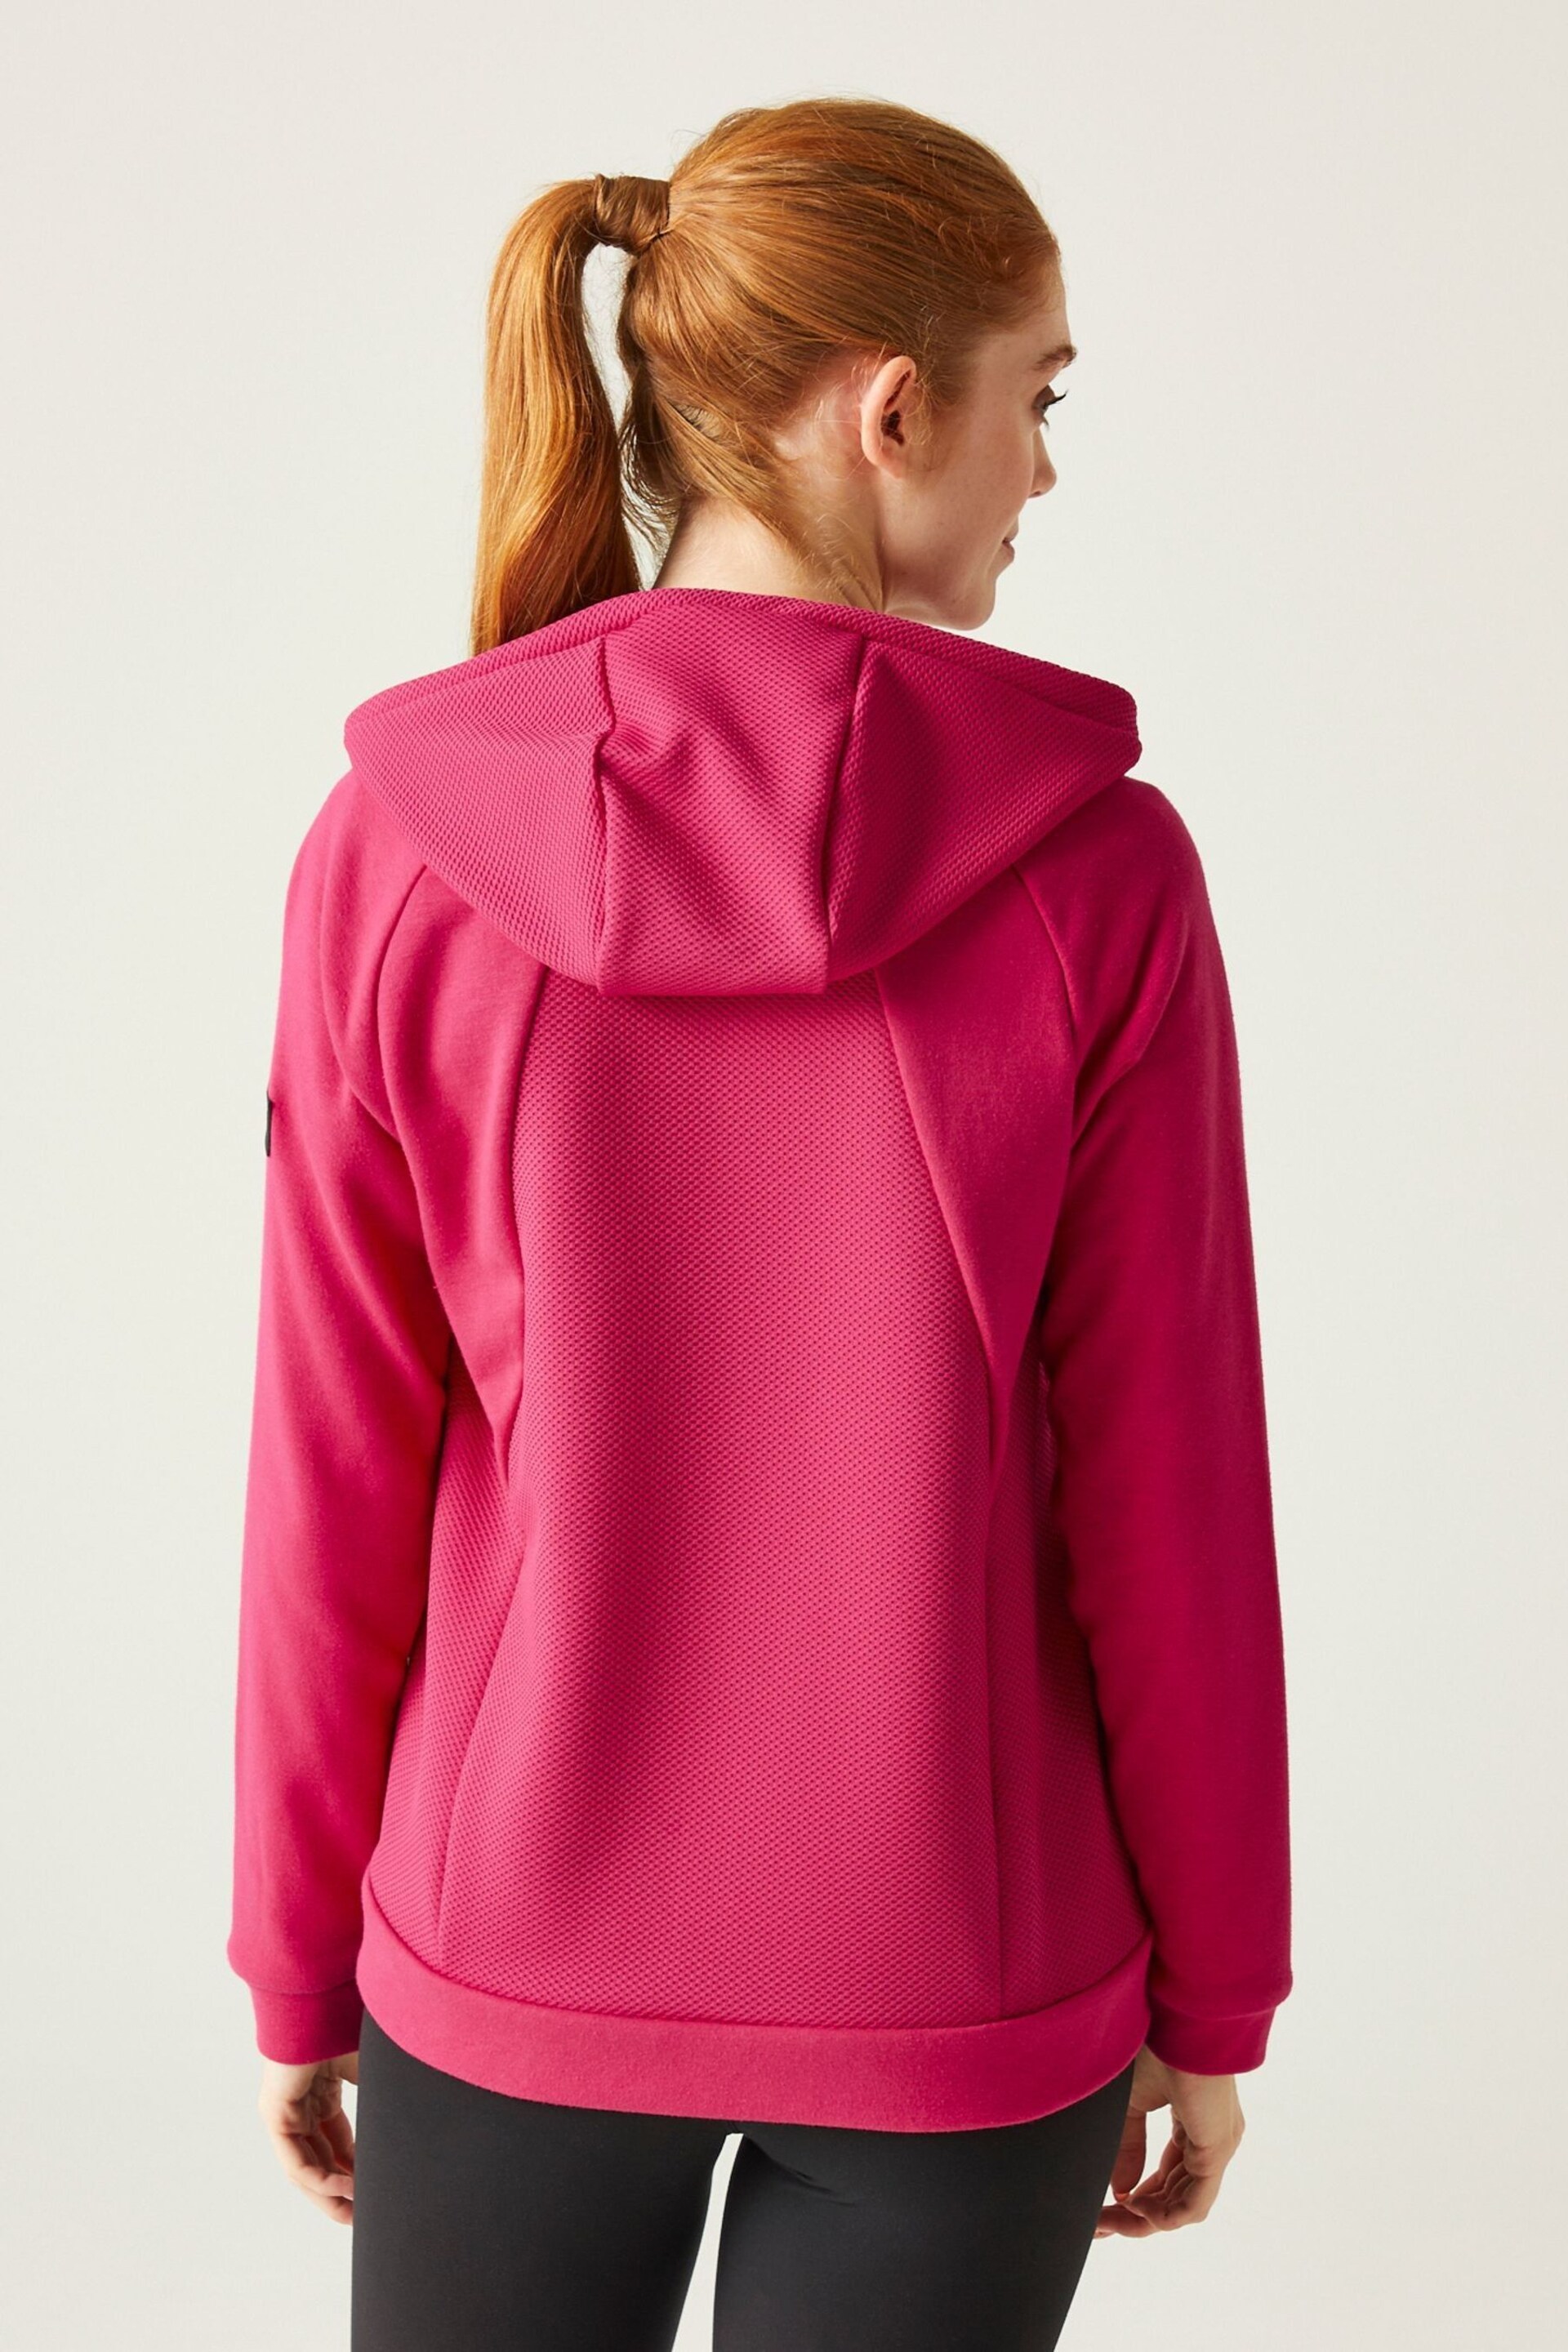 Regatta Pink Flamino Full Zip Hooded Fleece - Image 2 of 9